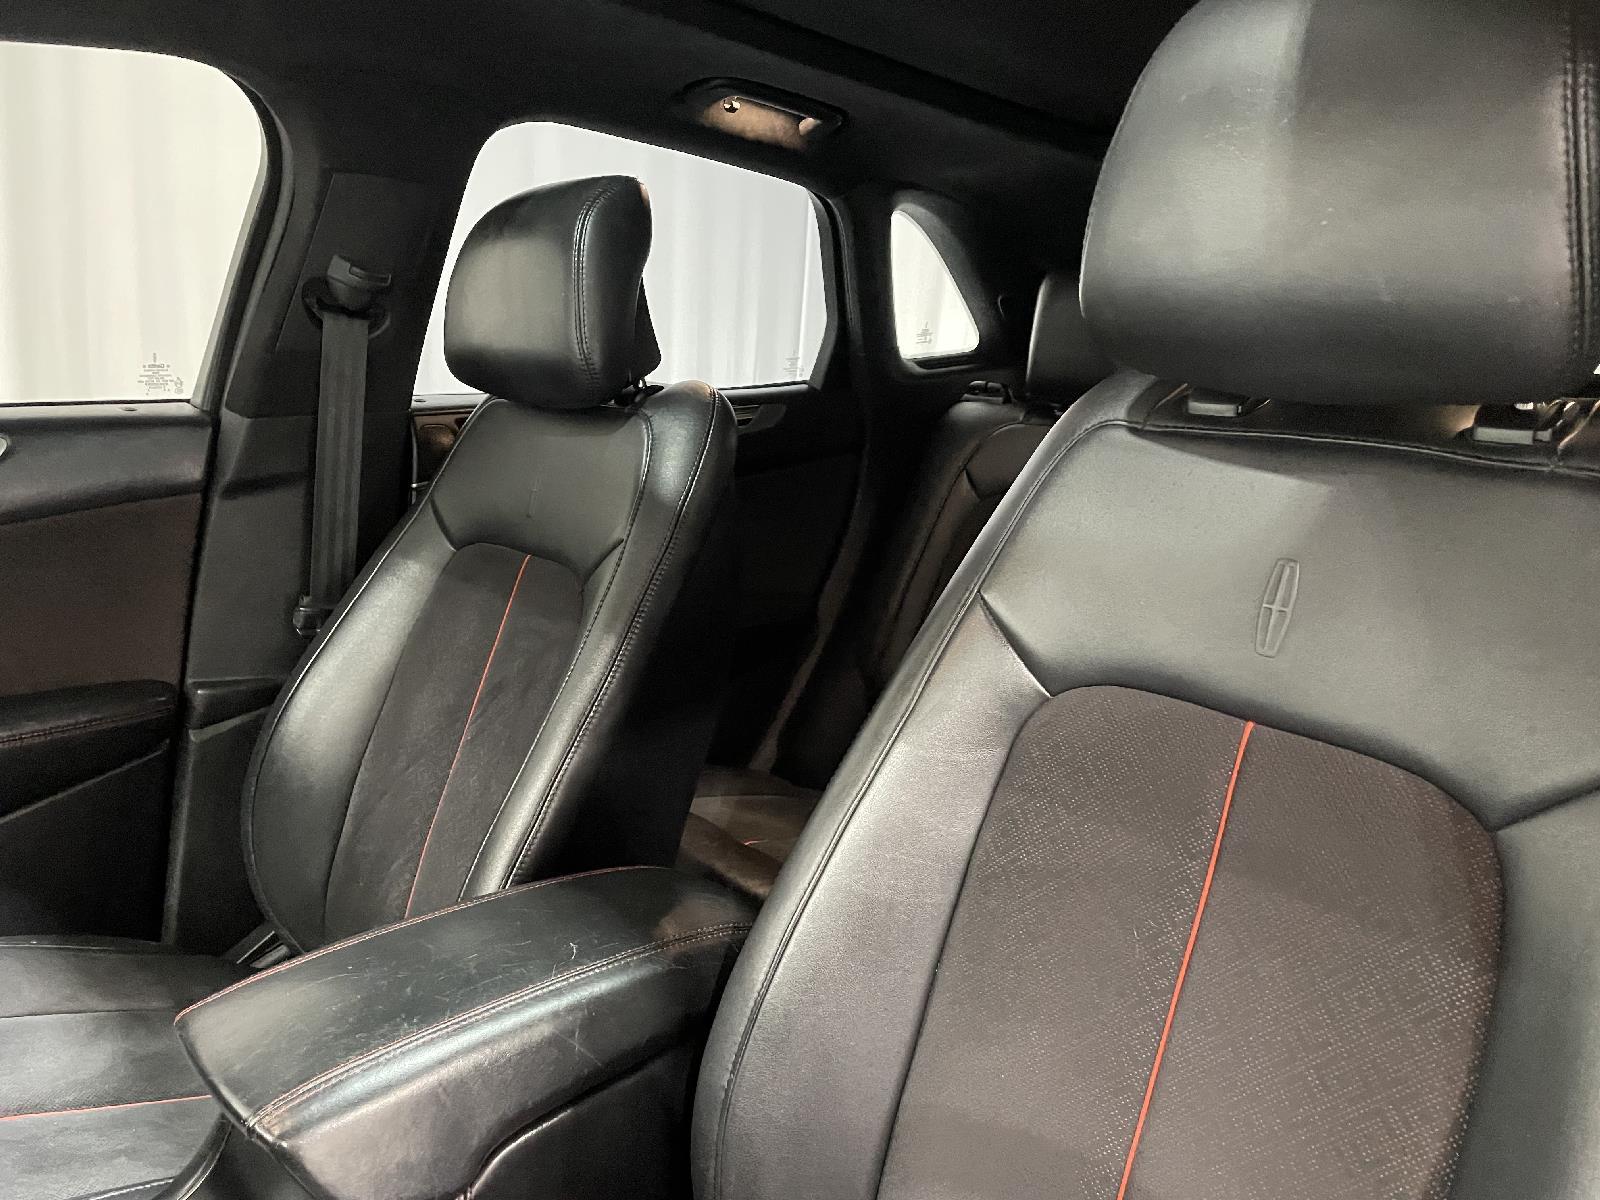 Used 2016 Lincoln MKC Black Label SUV for sale in St Joseph MO